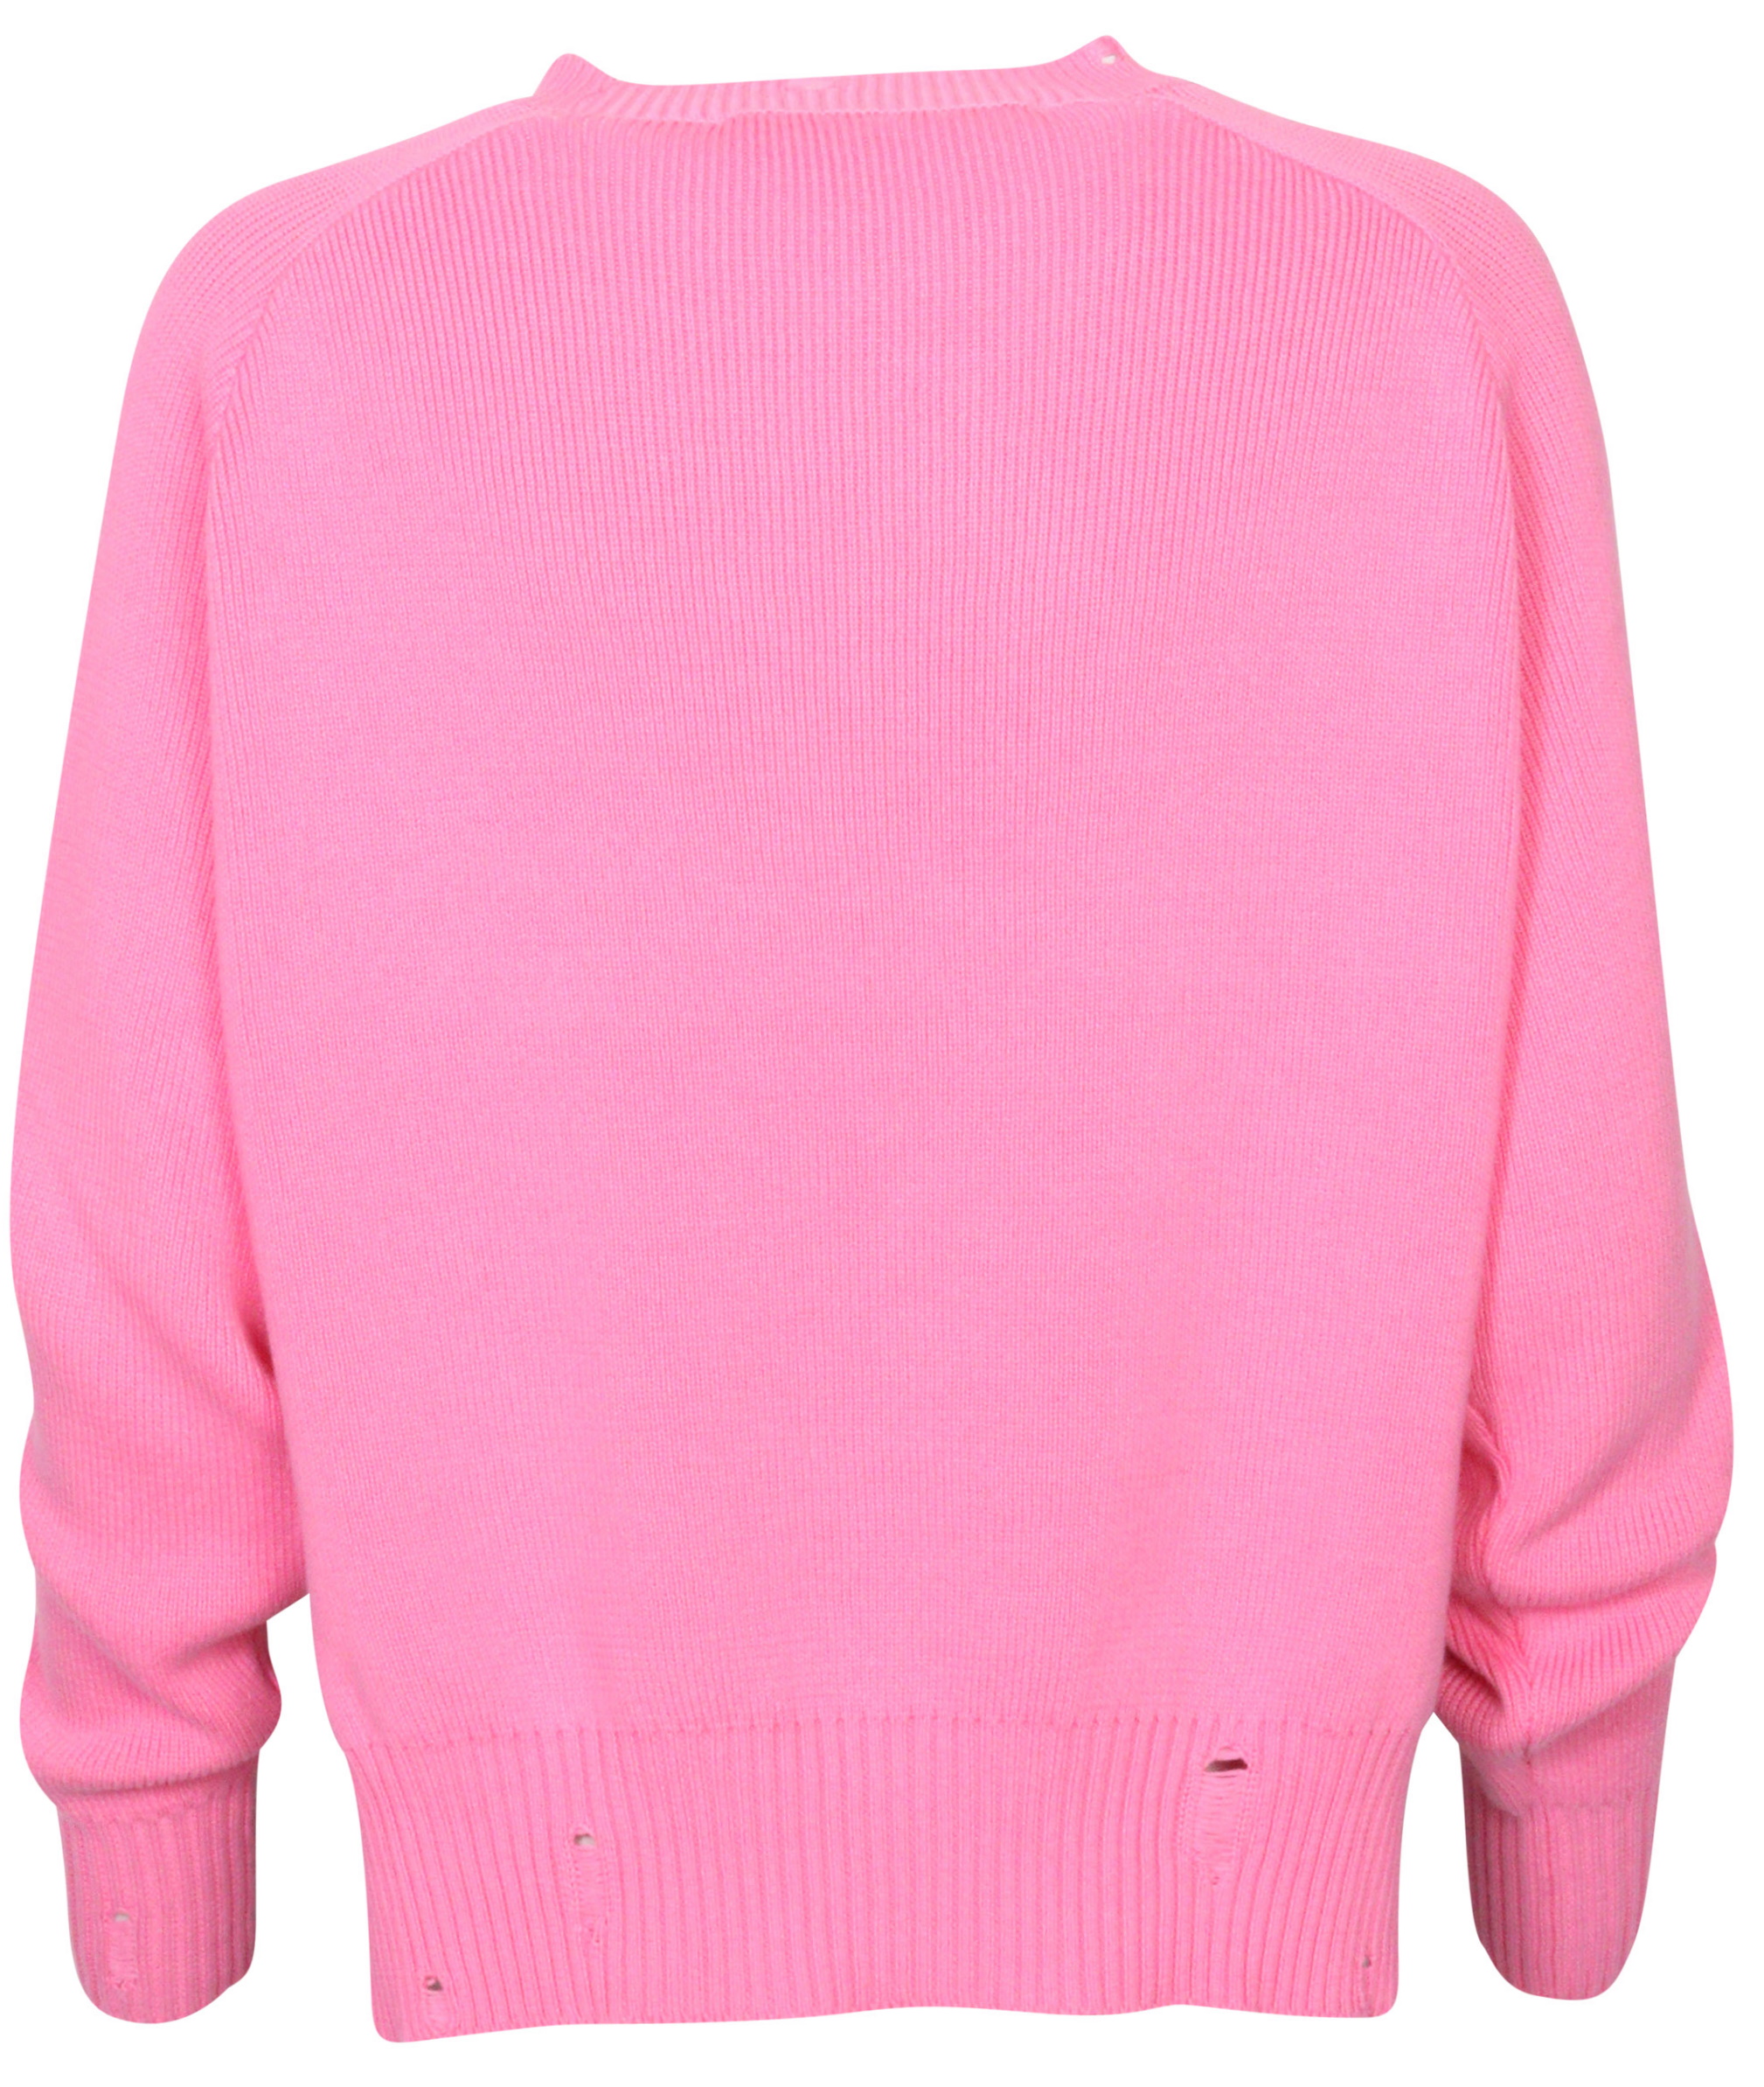 Golden Goose Knit Sweater Delilah Pink Flock Print